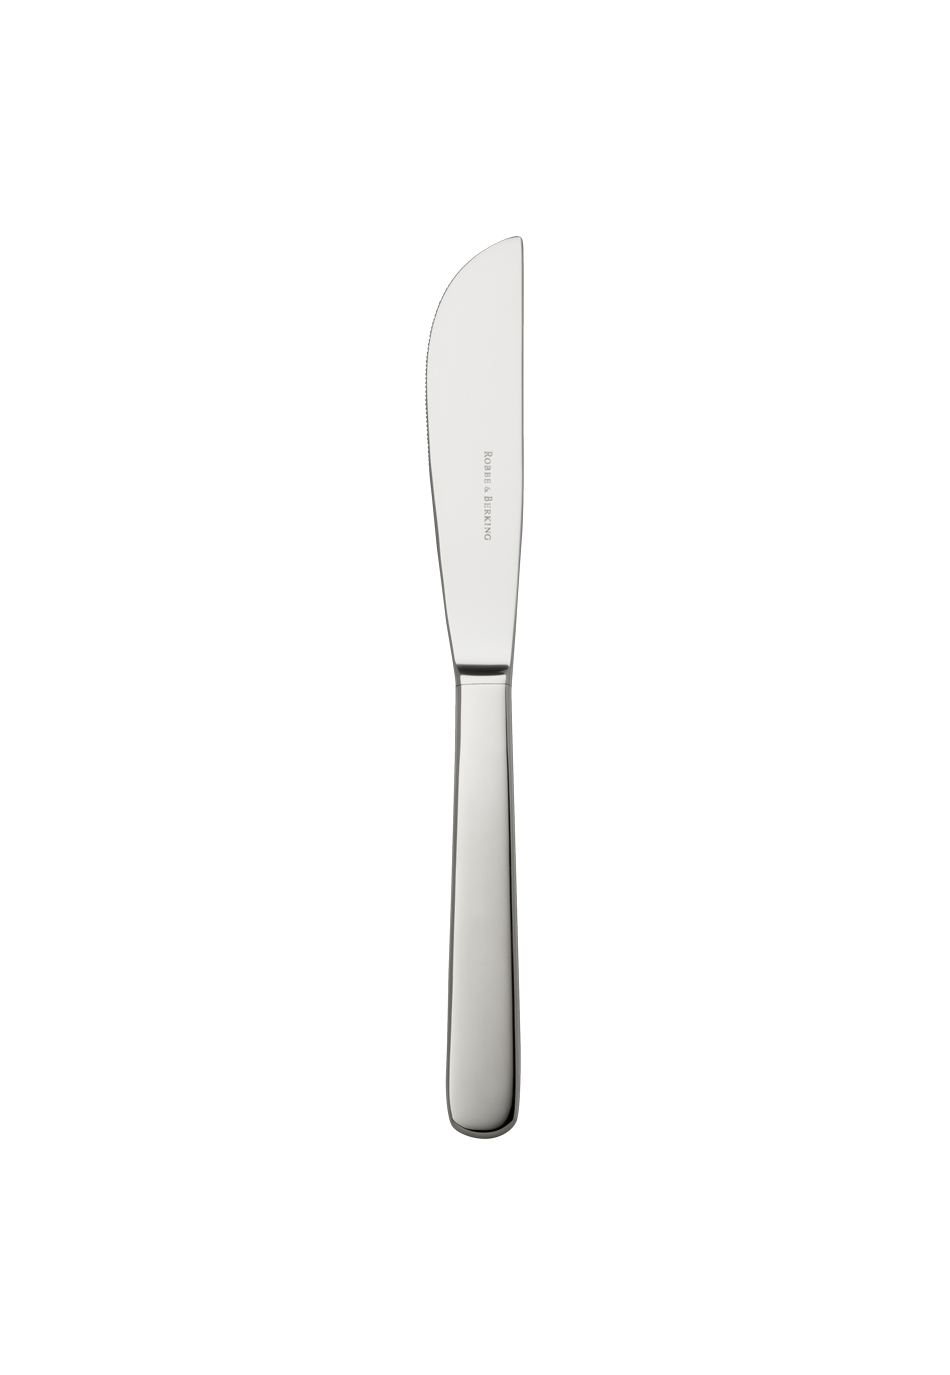 Atlantic Brillant Dessert Knife (18/8 stainless steel)